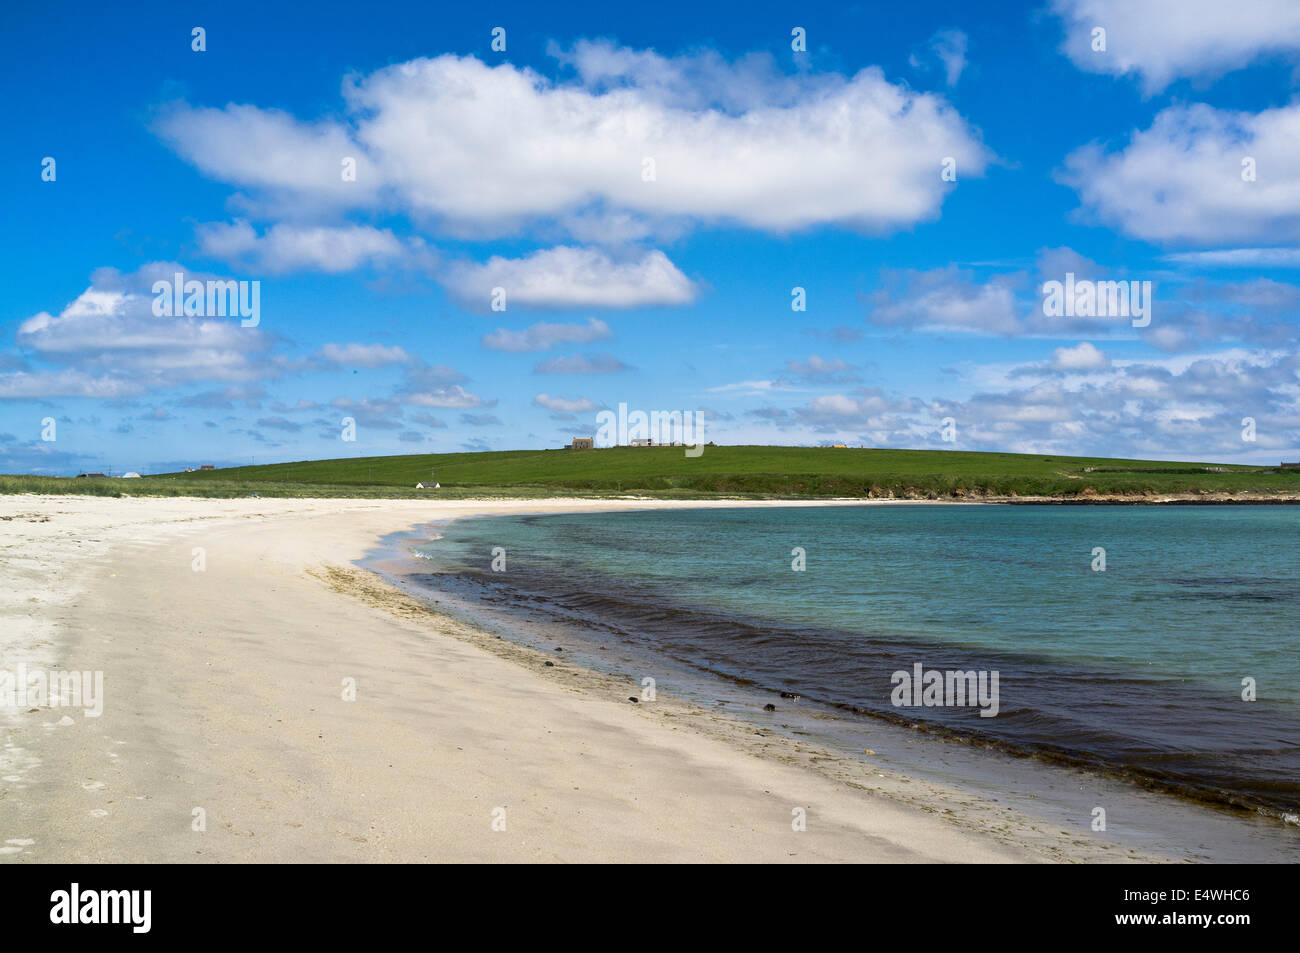 dh Ayre von Cara BURRAY ORKNEY Schottland Orkney Strand niemand Meeresküste blauer Himmel Wolken ruhige britische Küste Sand Sommer Sonnenschein inseln Meer Sonne Stockfoto